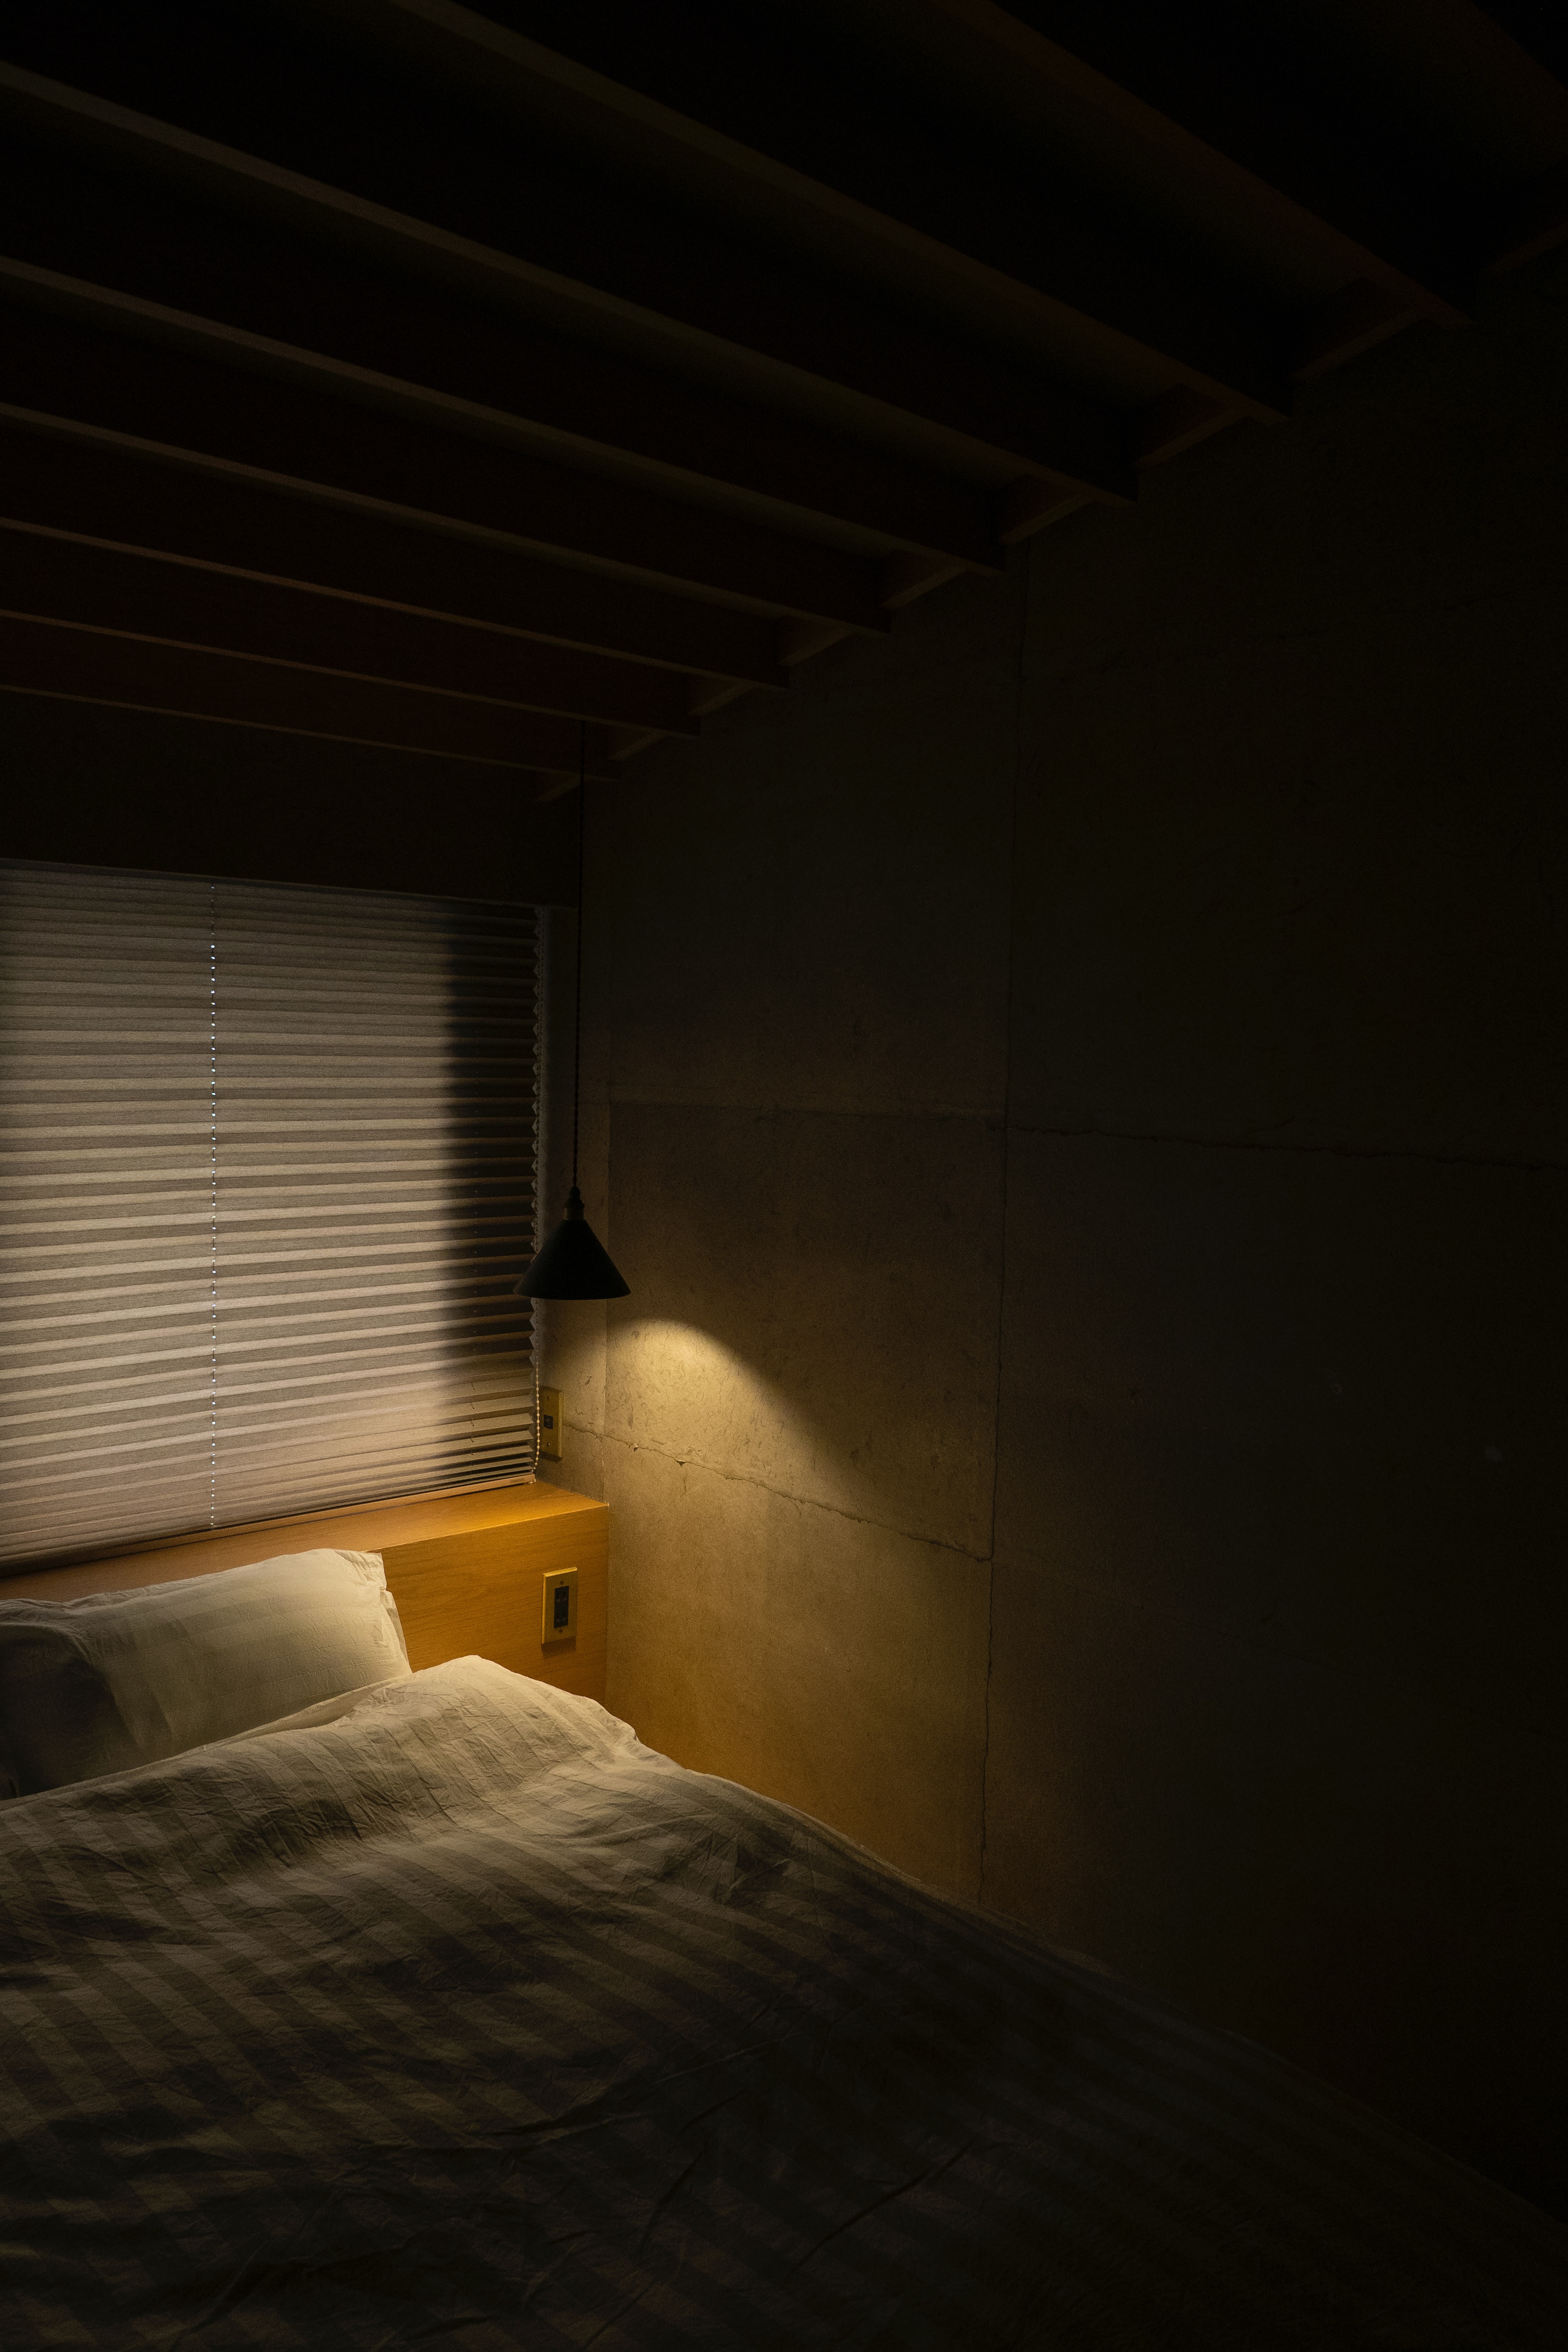 miscellaneous, interior, miscellanea, bed Hd 1080p Mobile